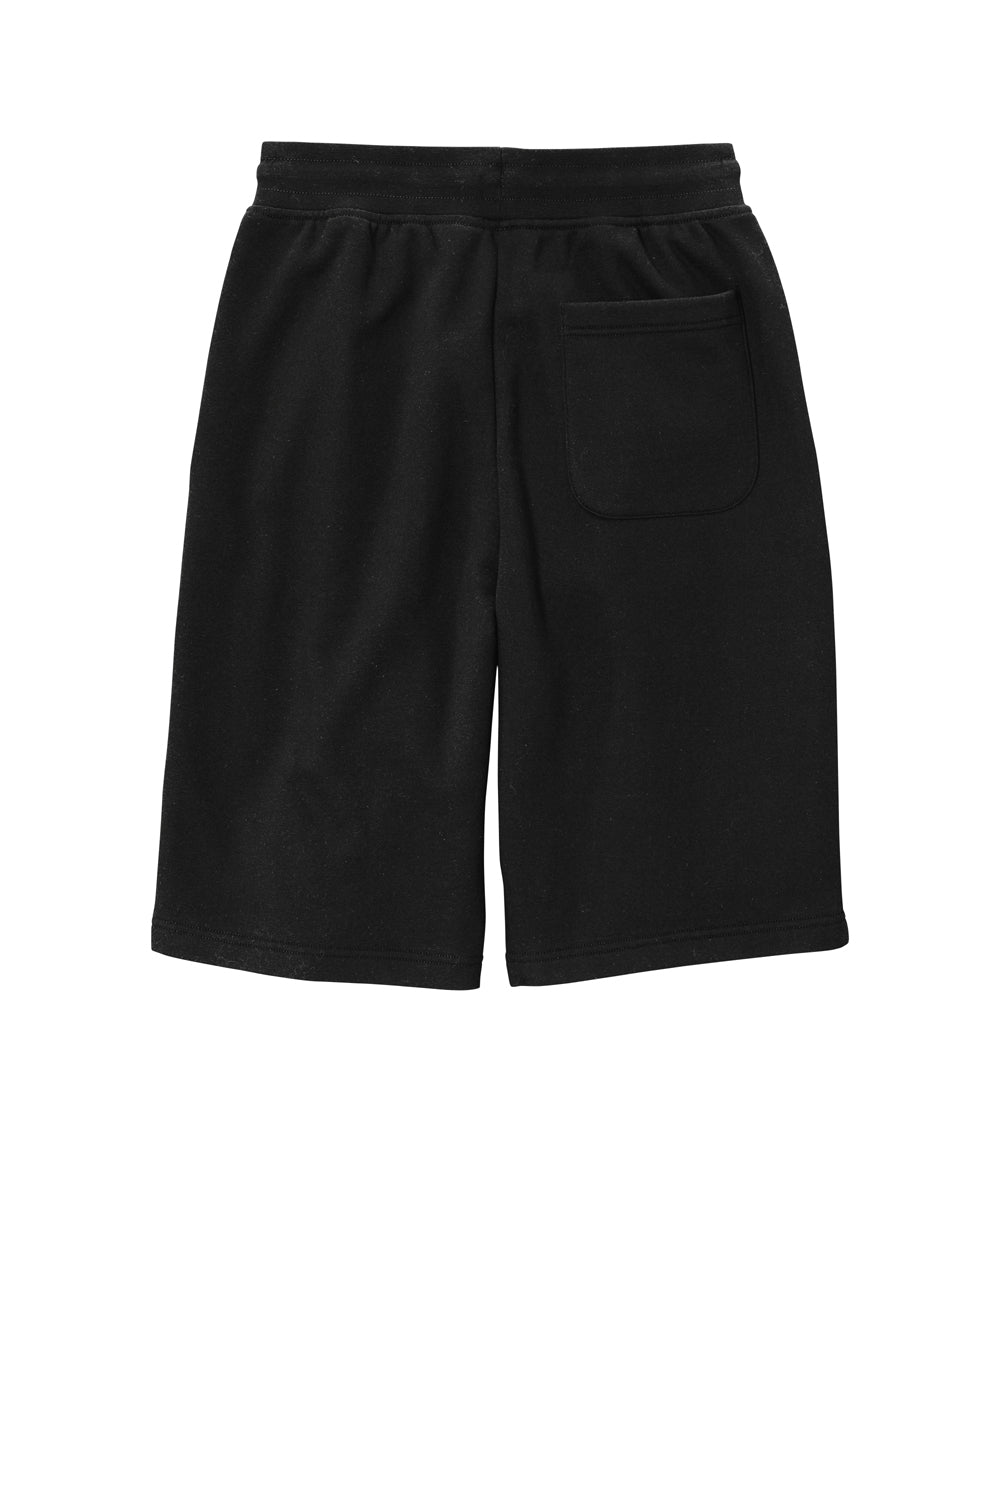 District DT6108 V.I.T. Fleece Shorts w/ Pockets Black Flat Back